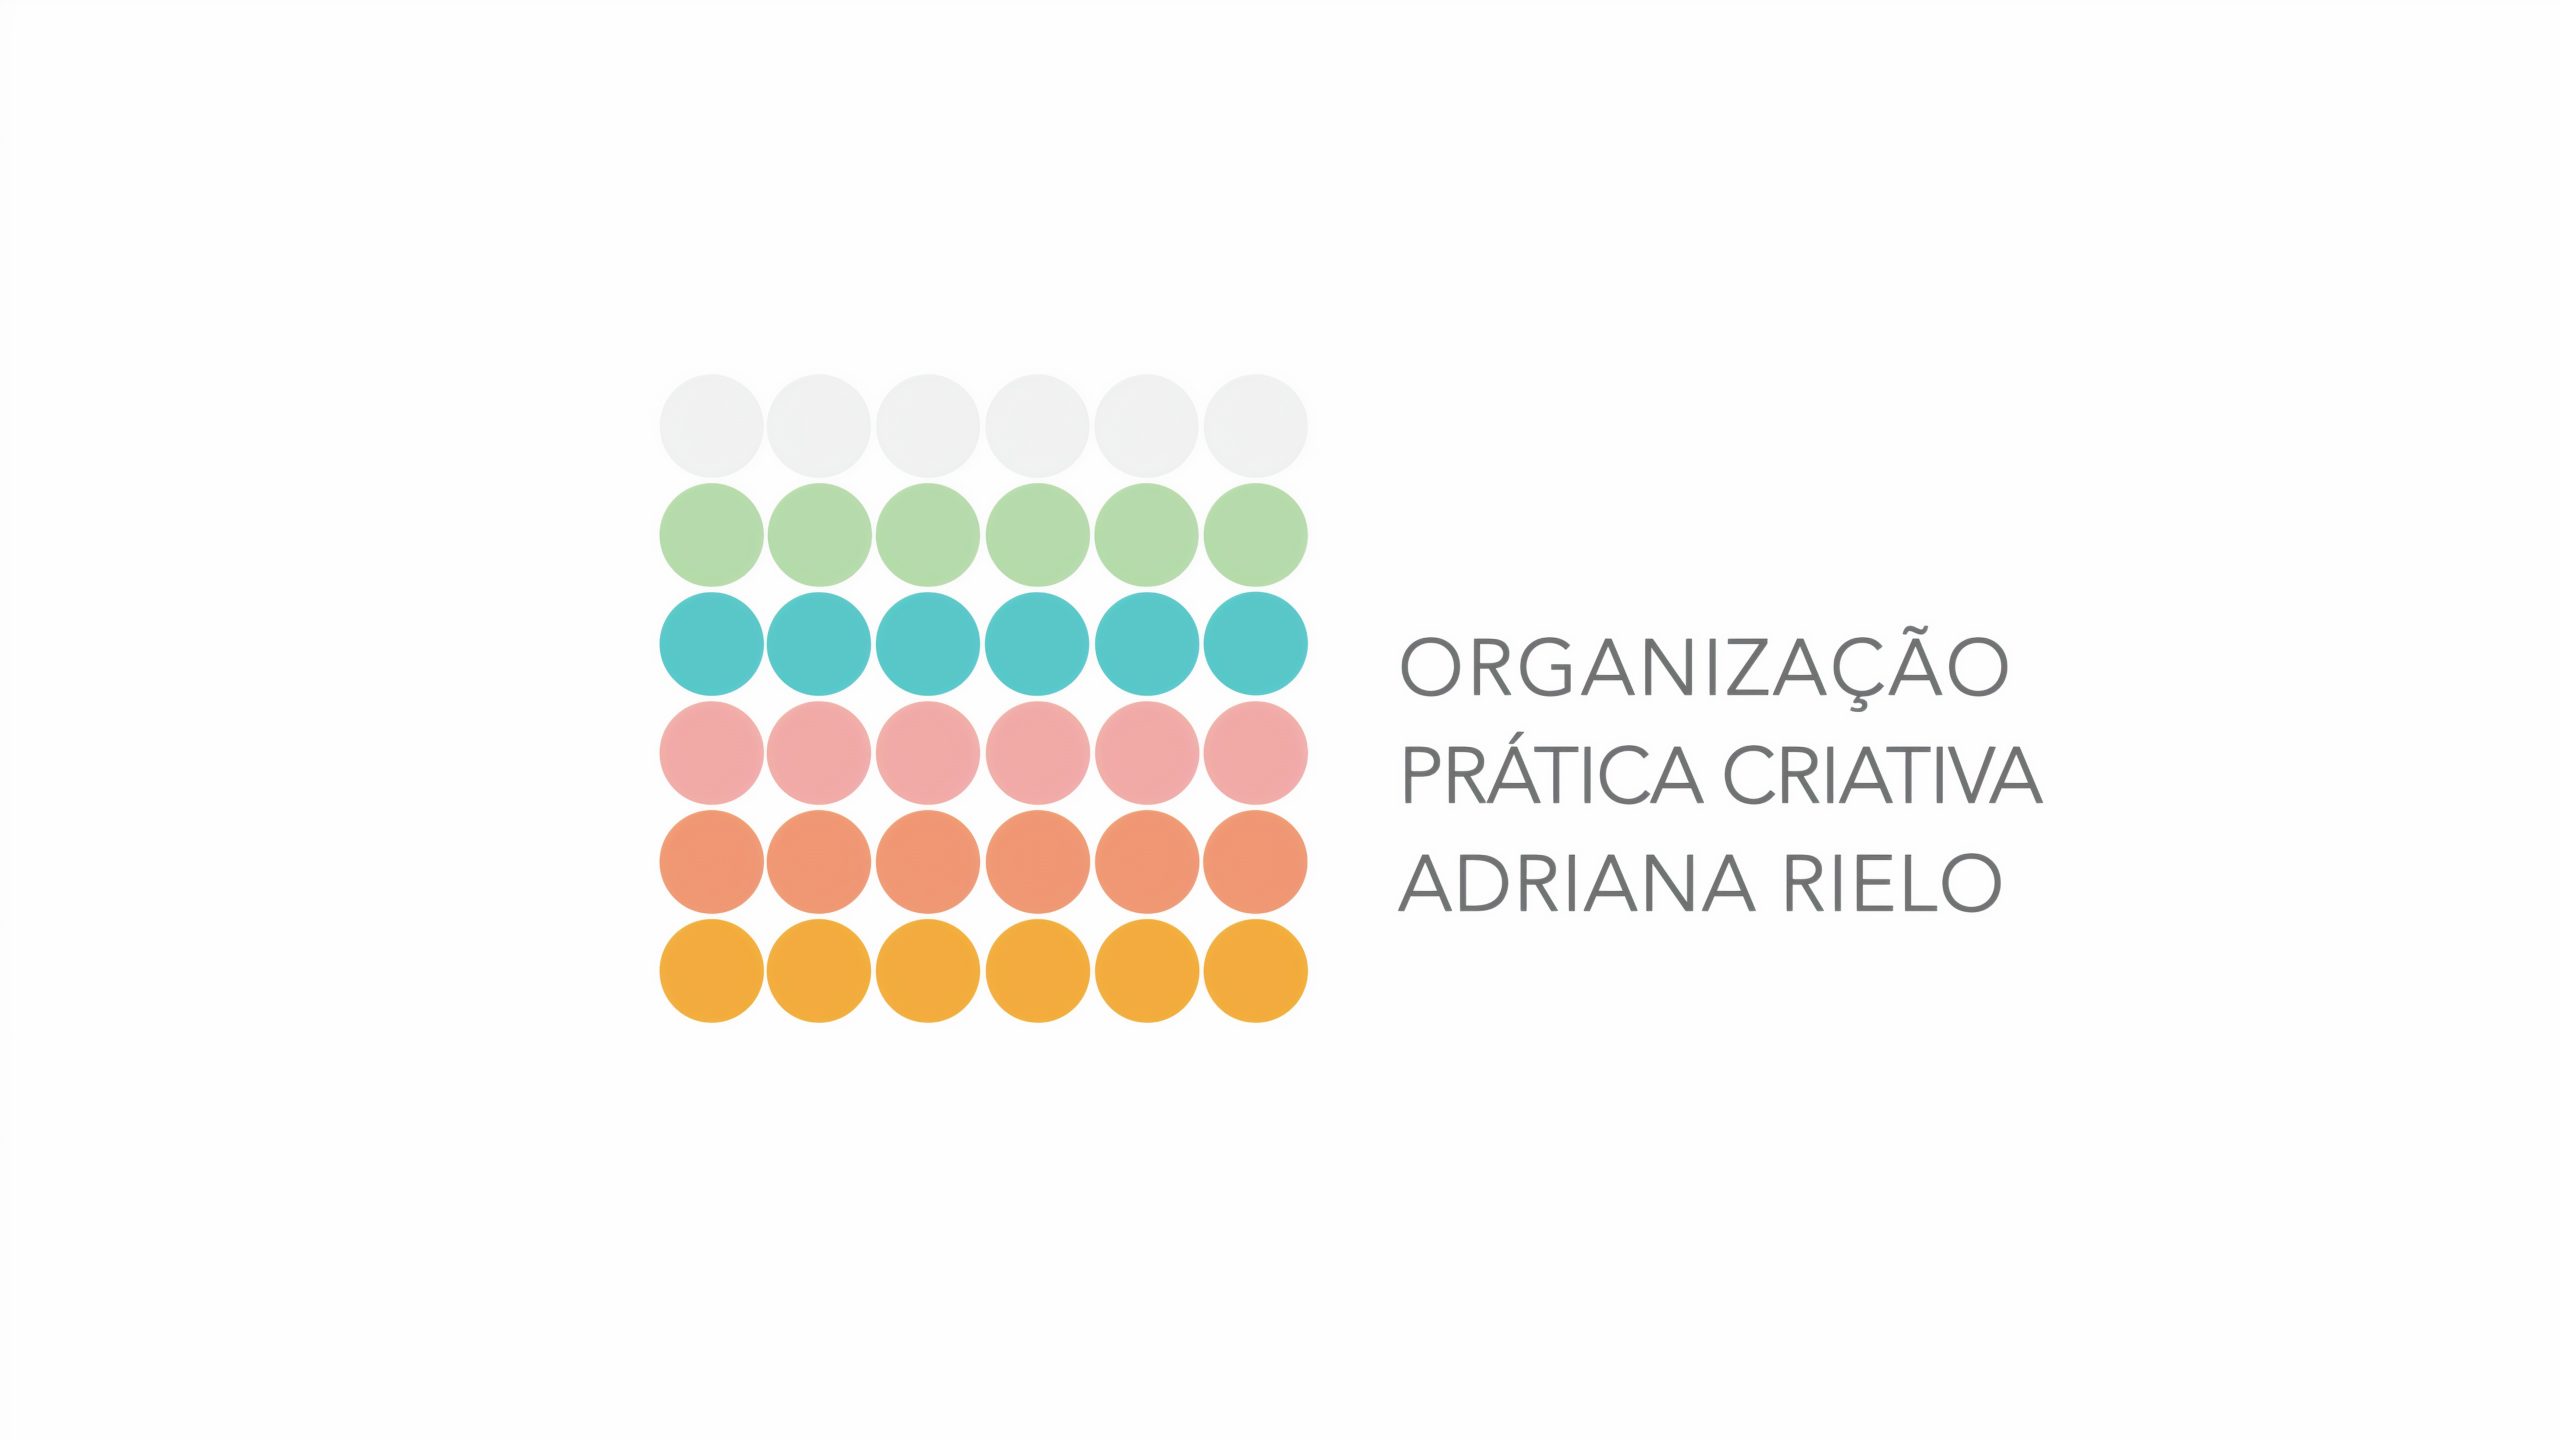 Adriana Rielo, Personal Organizer